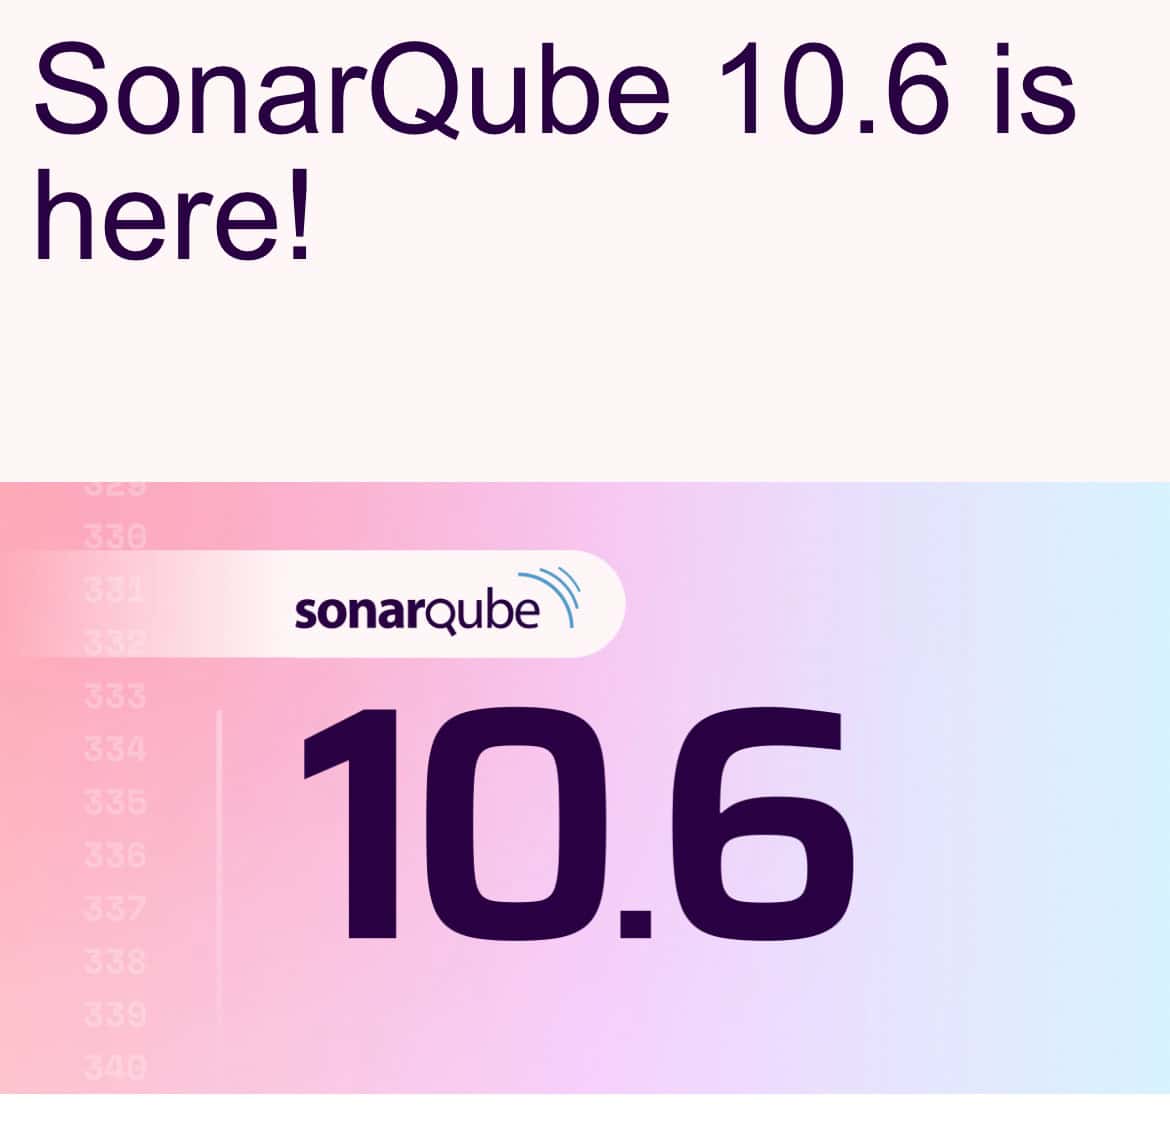 Ankündigung im Maileingang: 'SonarQube 10.6 is here!'